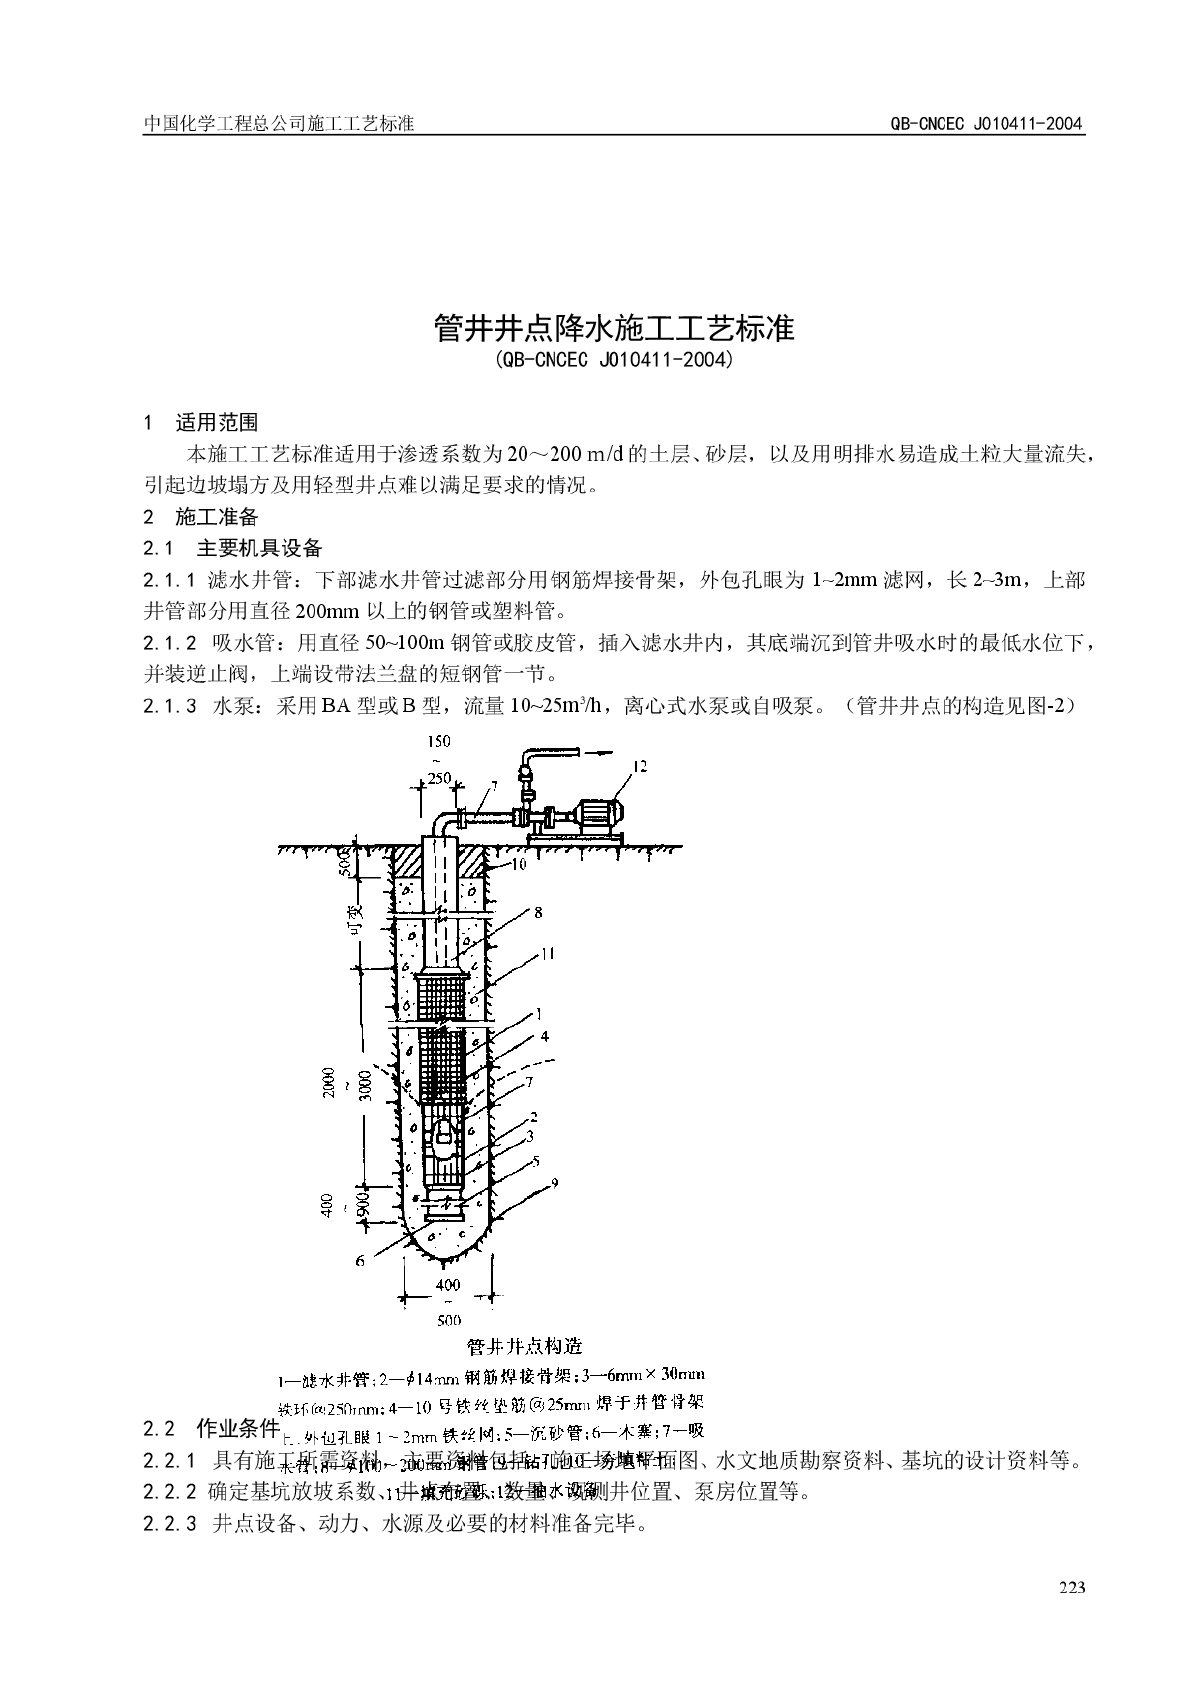 QB-CNCEC J010411-2004 管井井点降水施工工艺标准